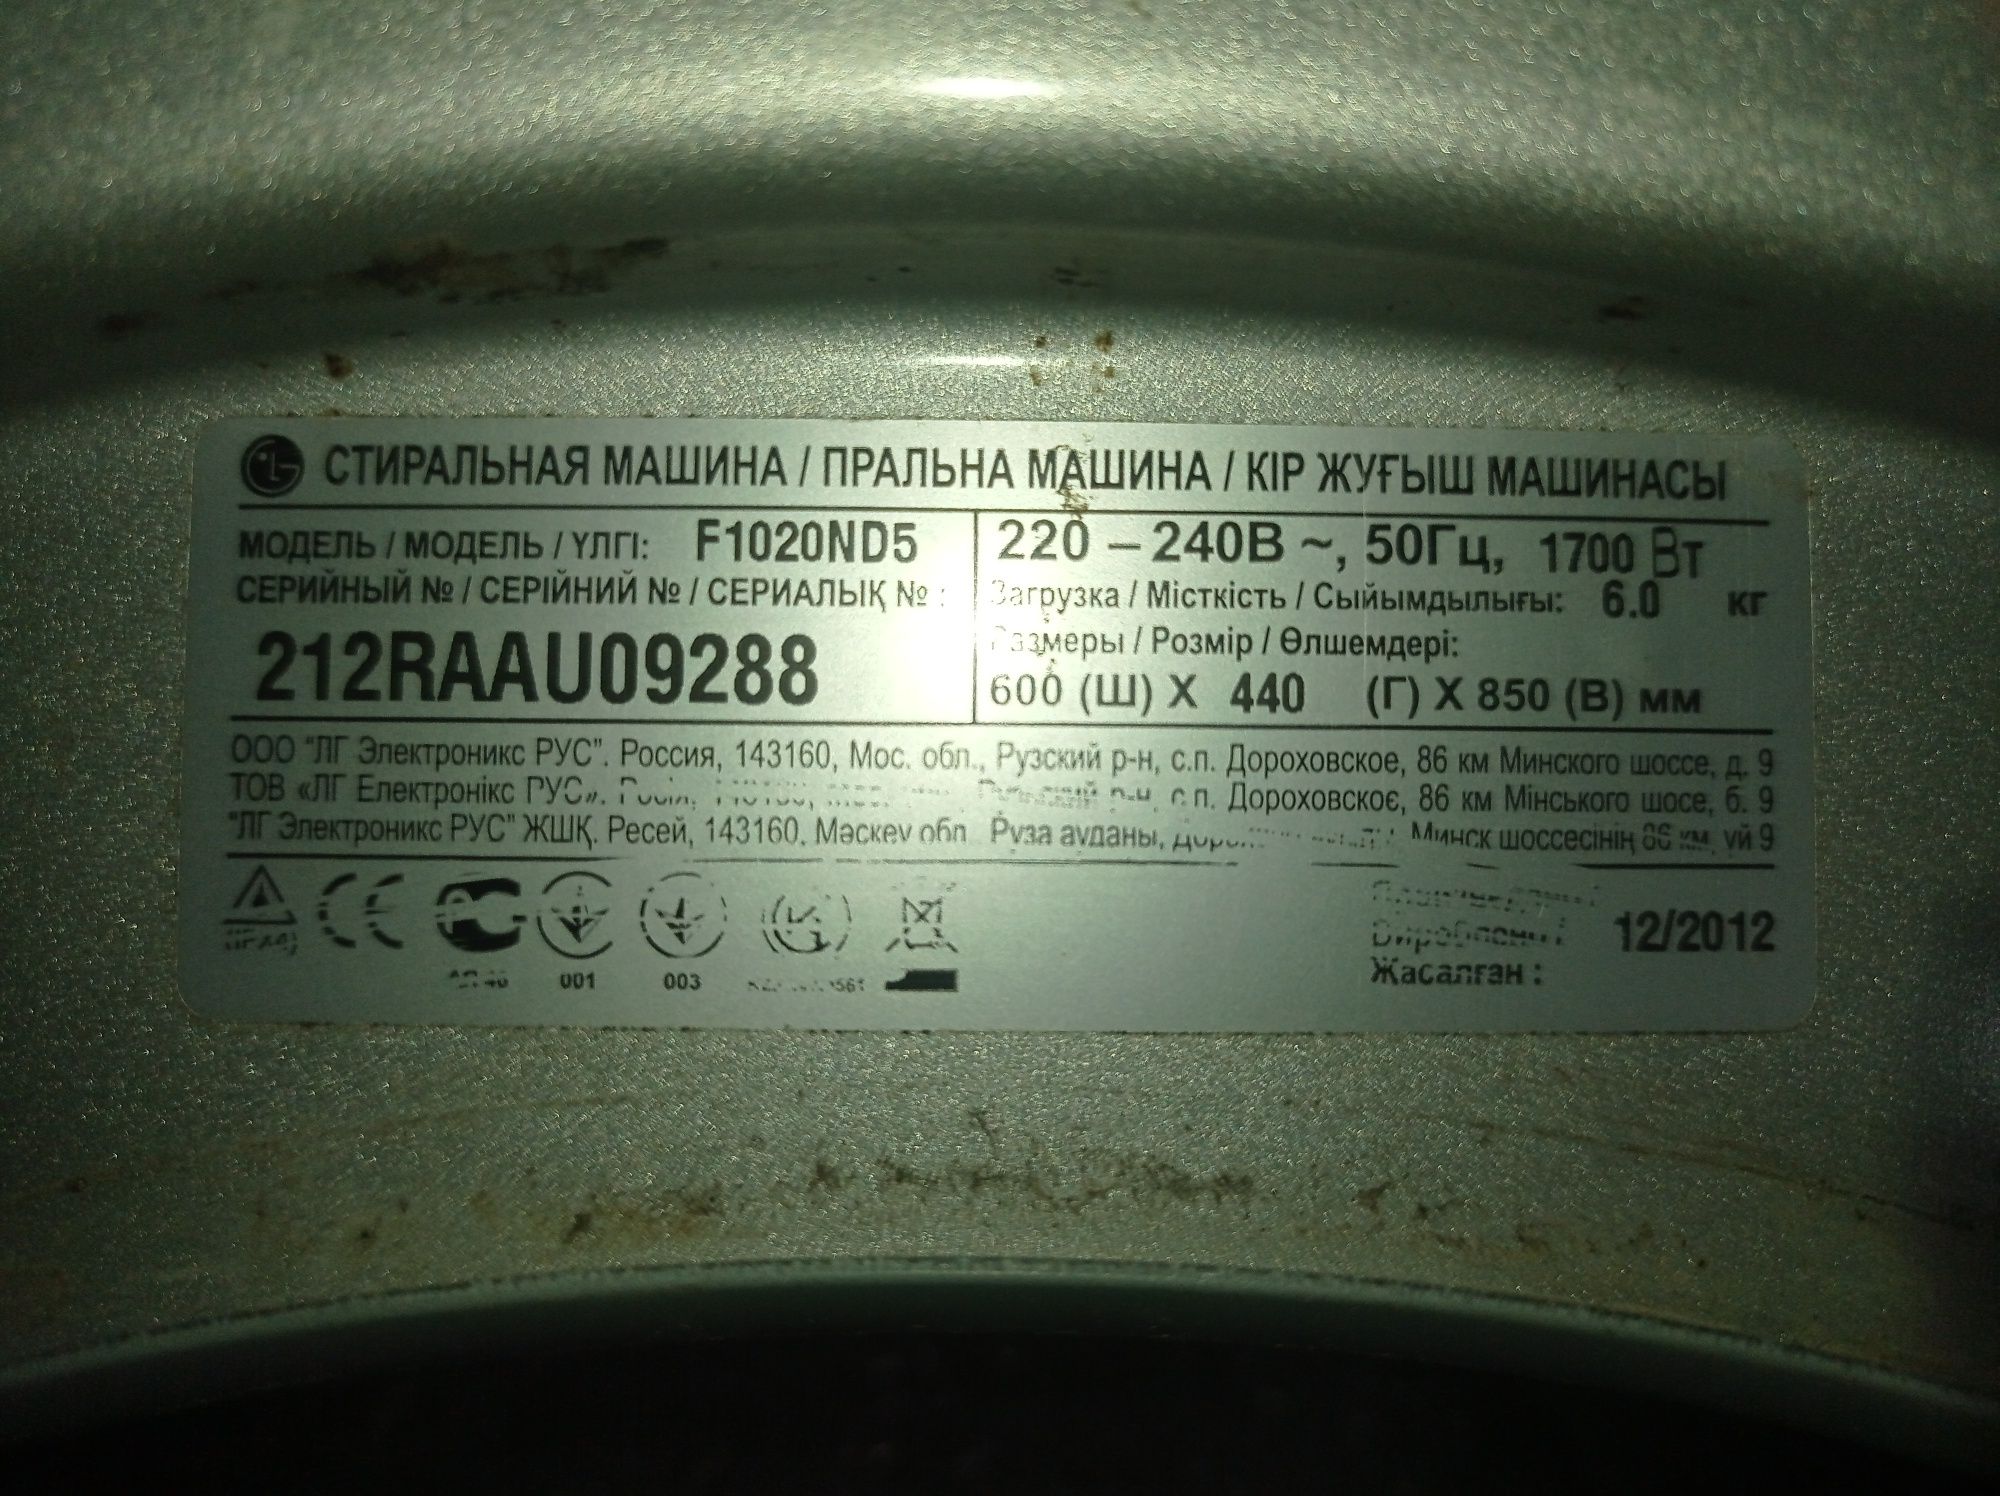 Запчасти на стиральную машину LG сборка Россия.